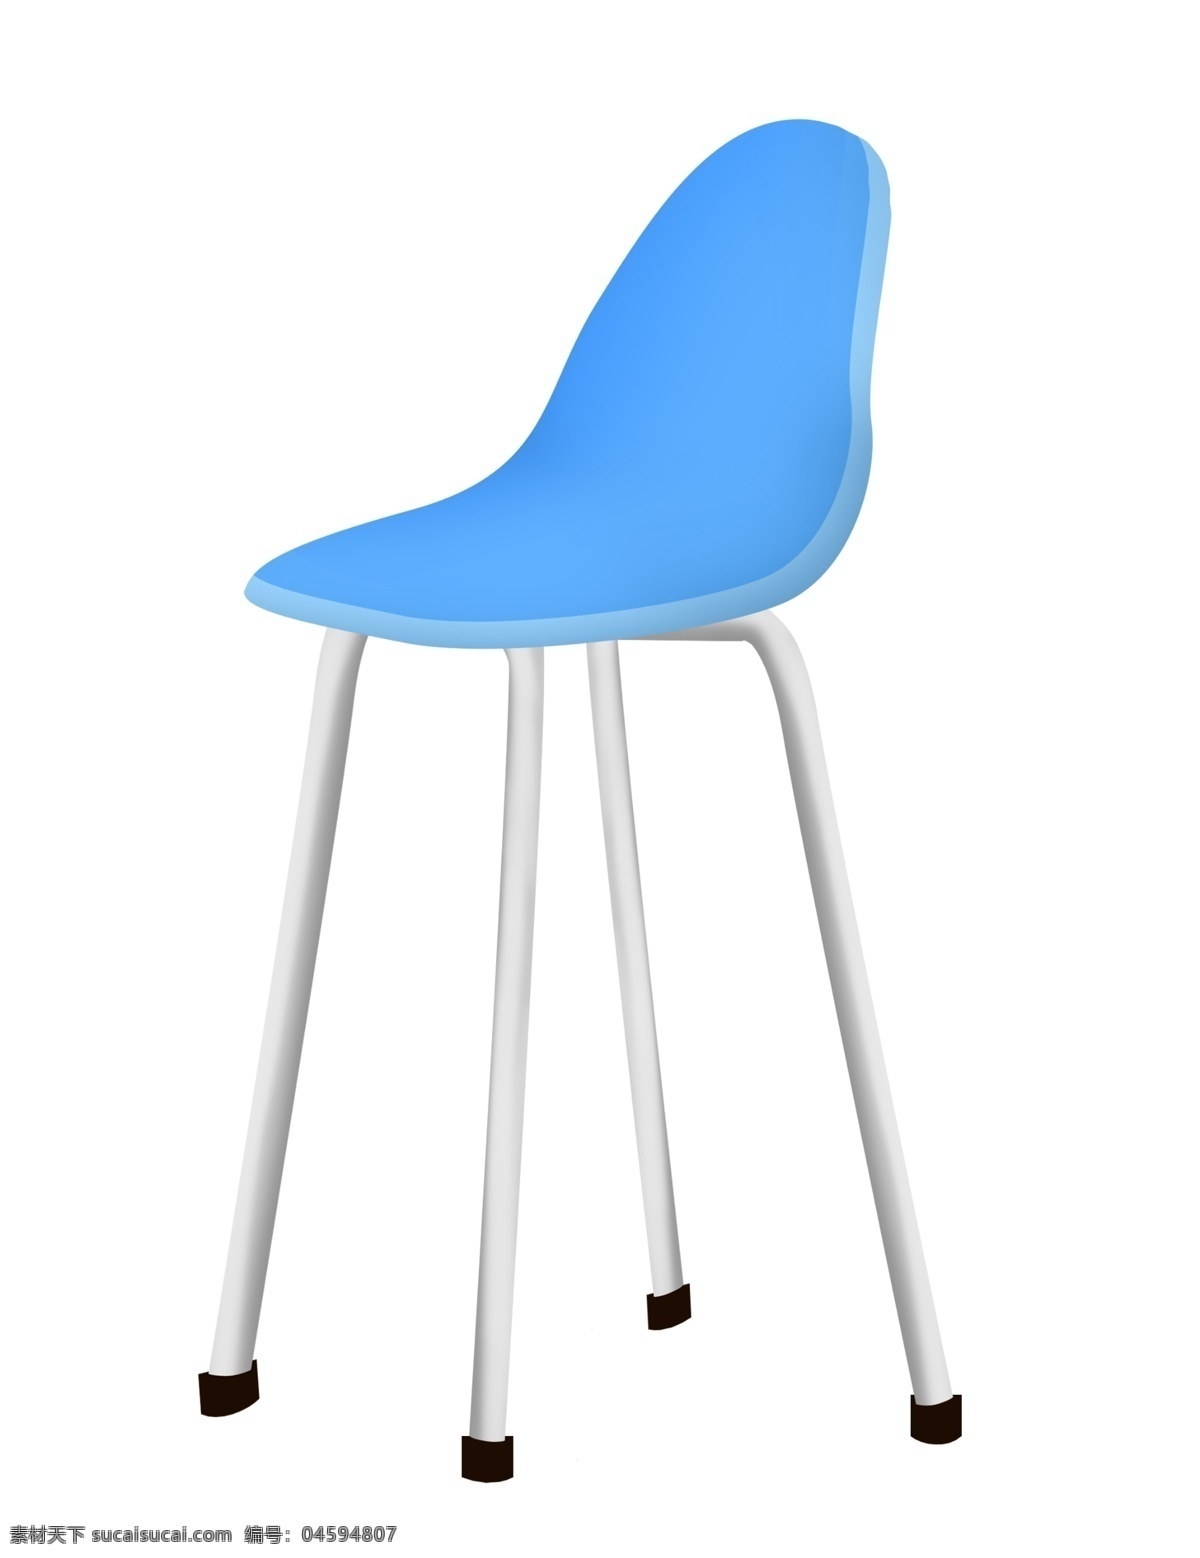 一把 蓝色 椅子 插图 一把椅子 蓝色椅子 椅子插画 家具椅子 靠背椅子 椅子插图 家具